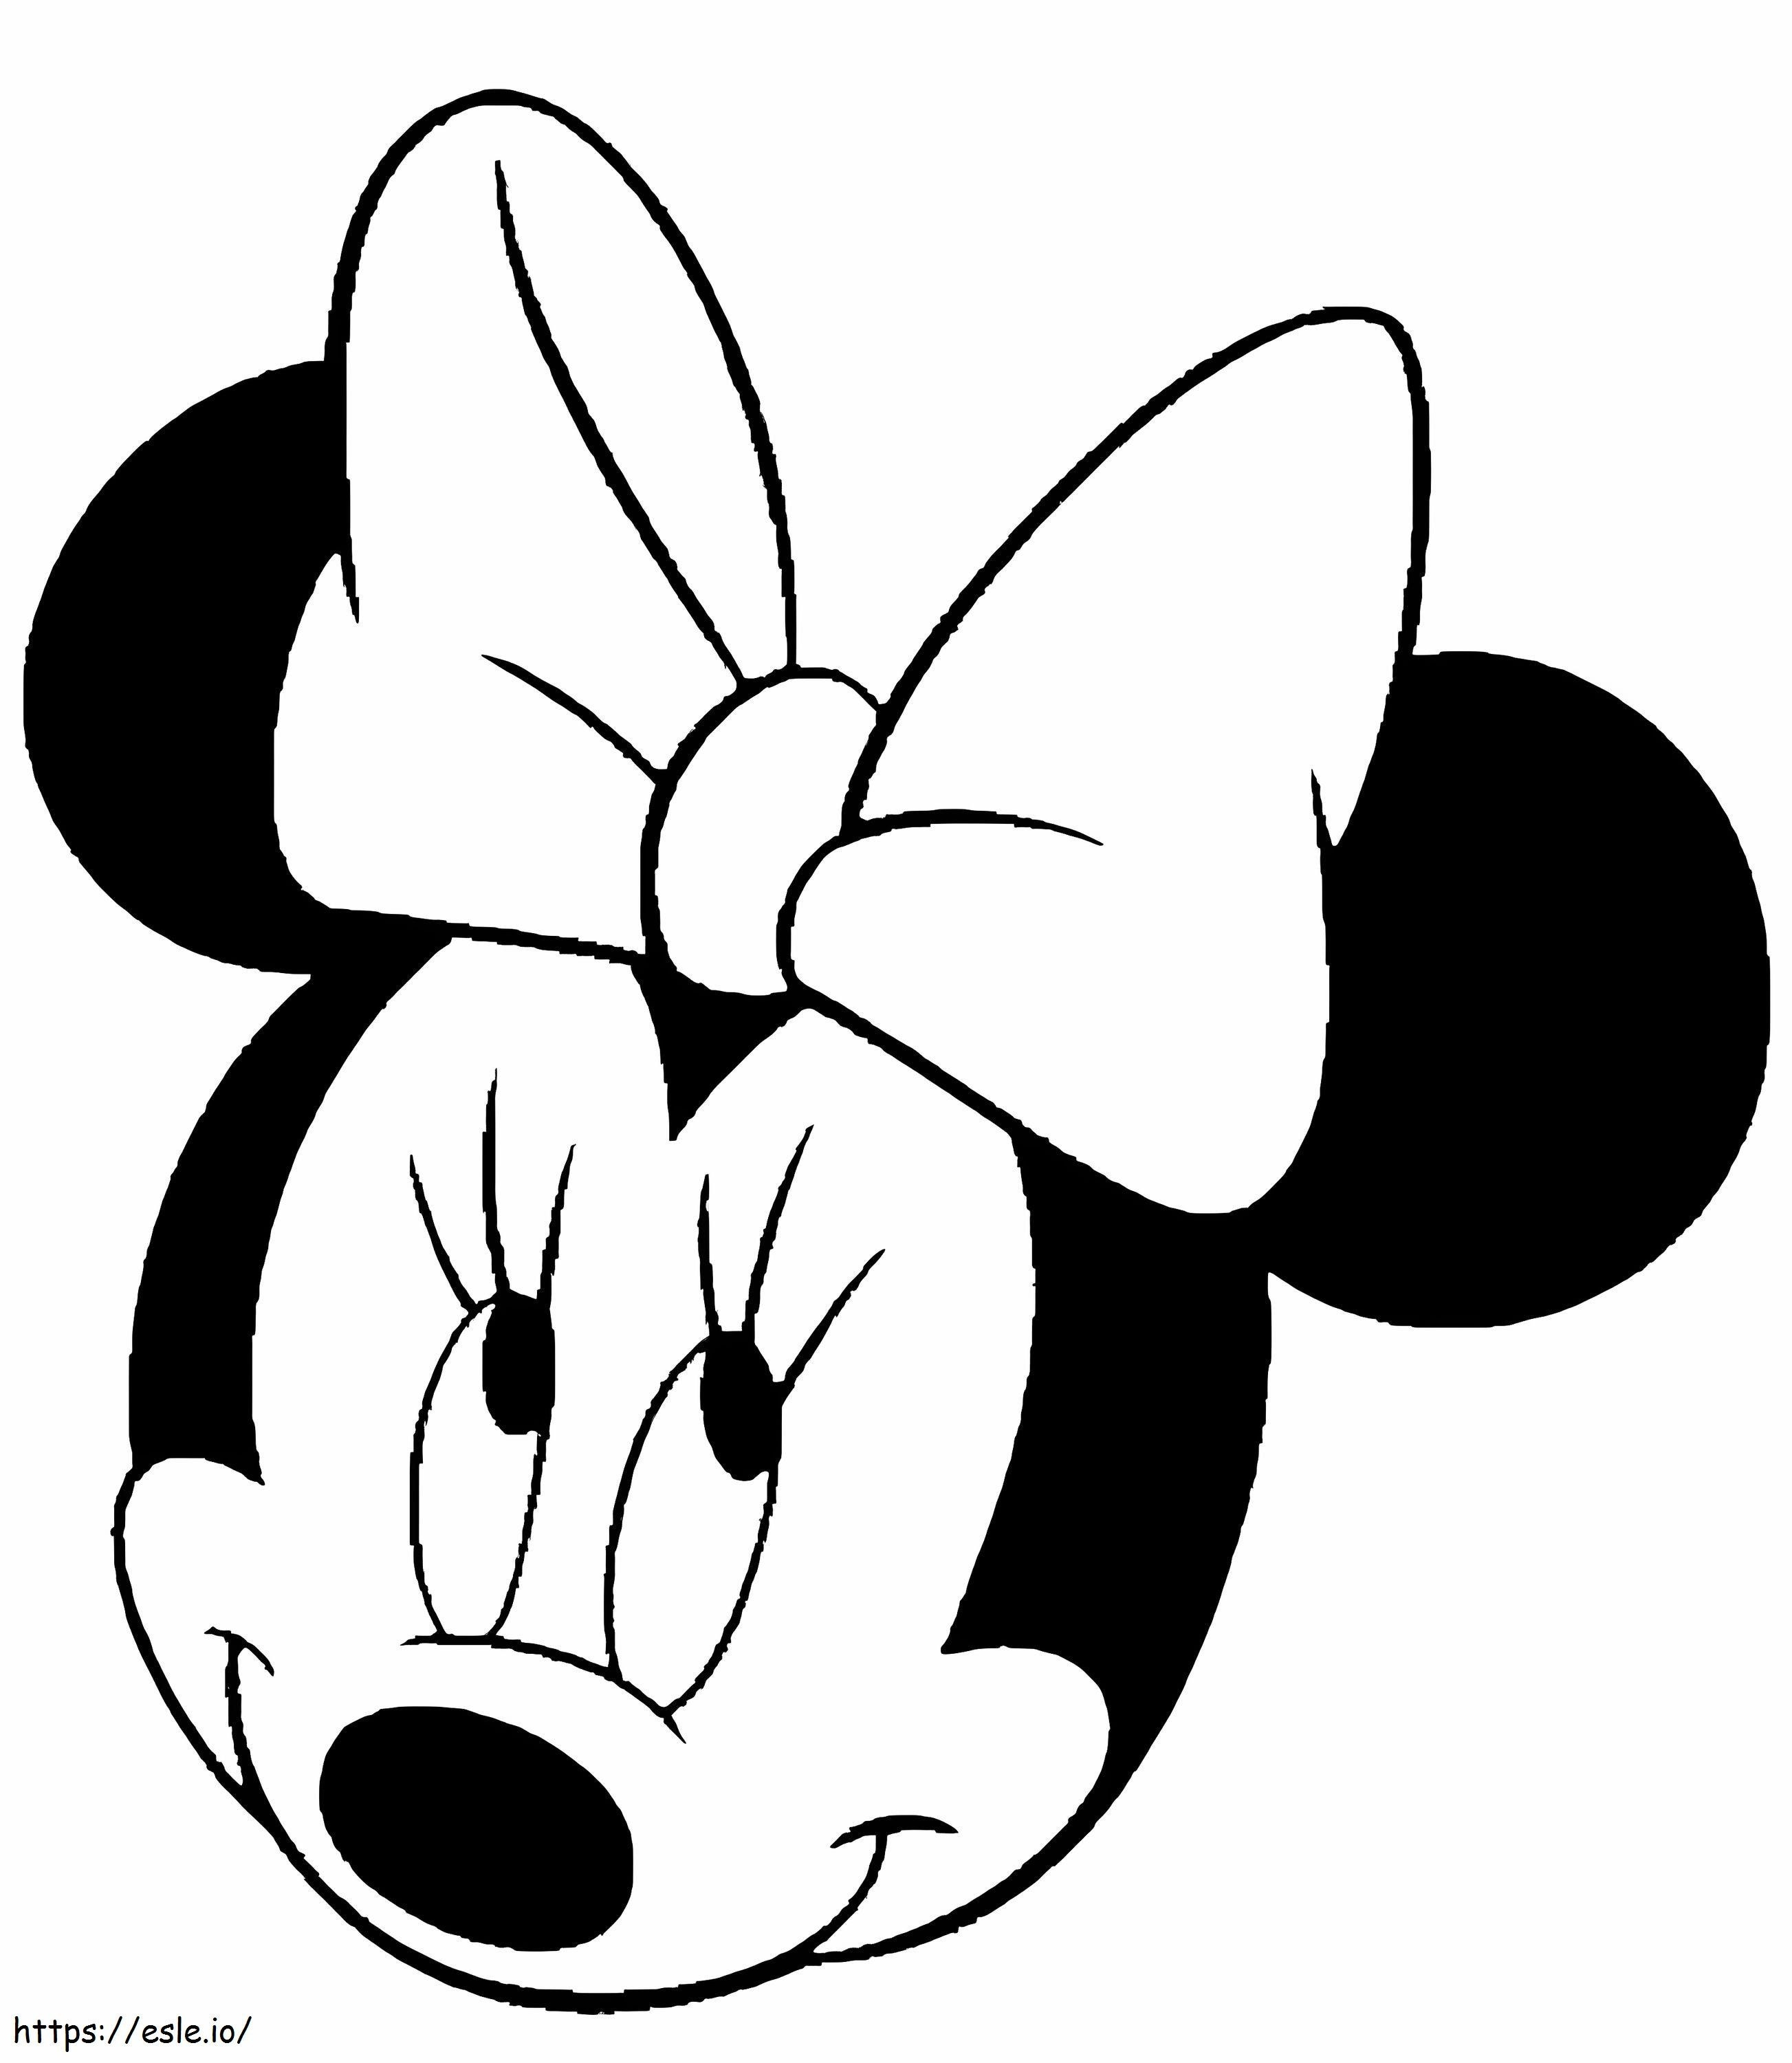 Lächelnder Minnie-Maus-Kopf ausmalbilder